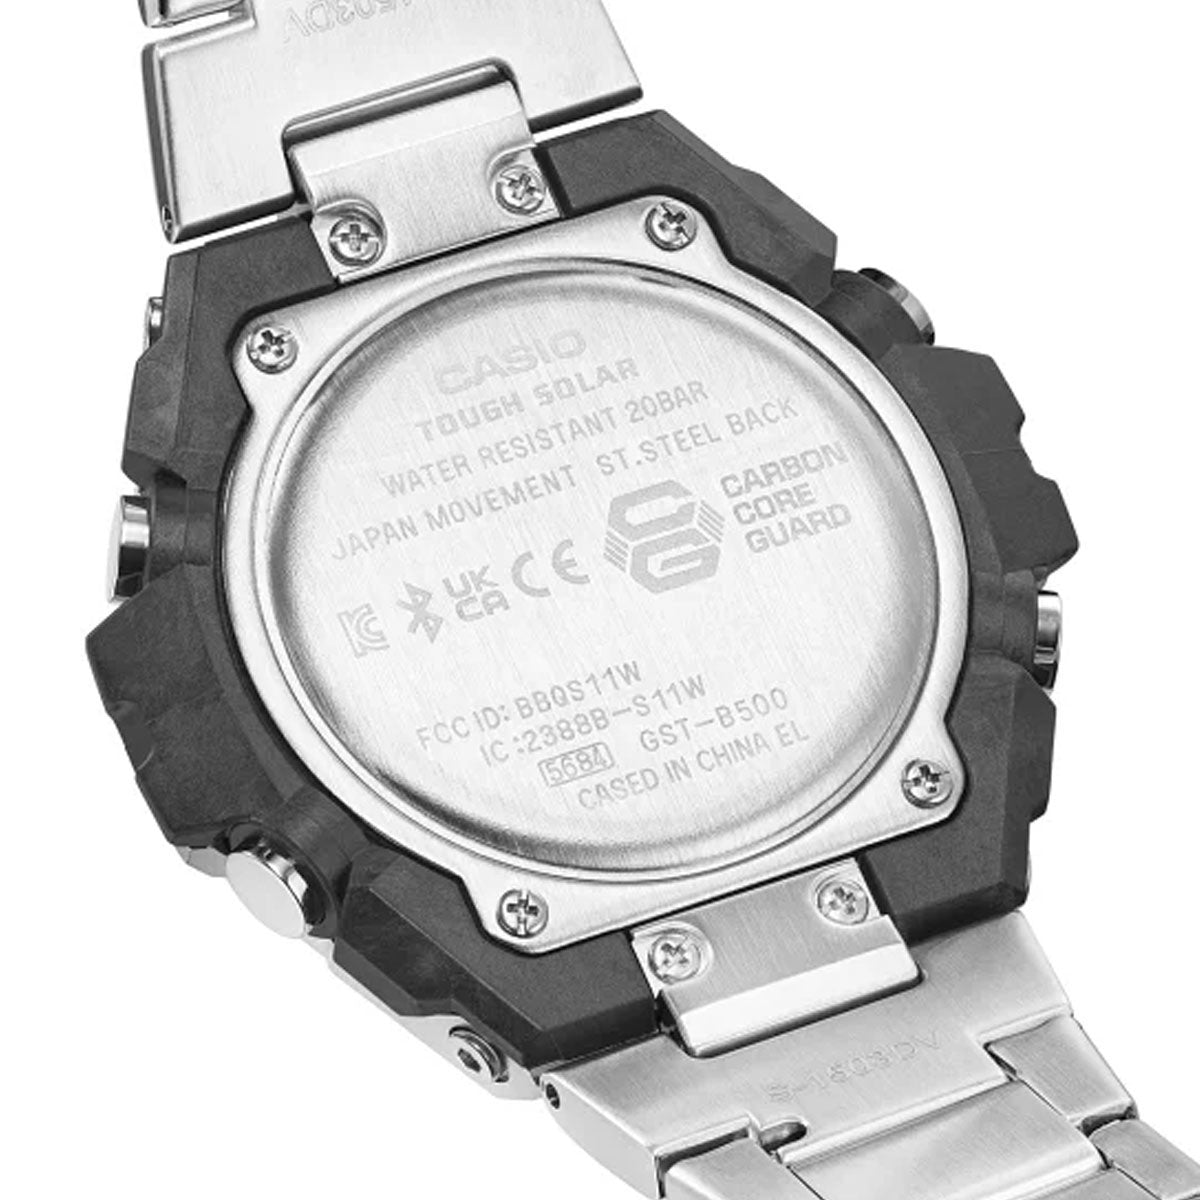 G-SHOCK ソーラー G-STEEL カシオ Gショック Gスチール CASIO 腕時計 メンズ GST-B500D-1AJF タフソーラー スマートフォンリンク